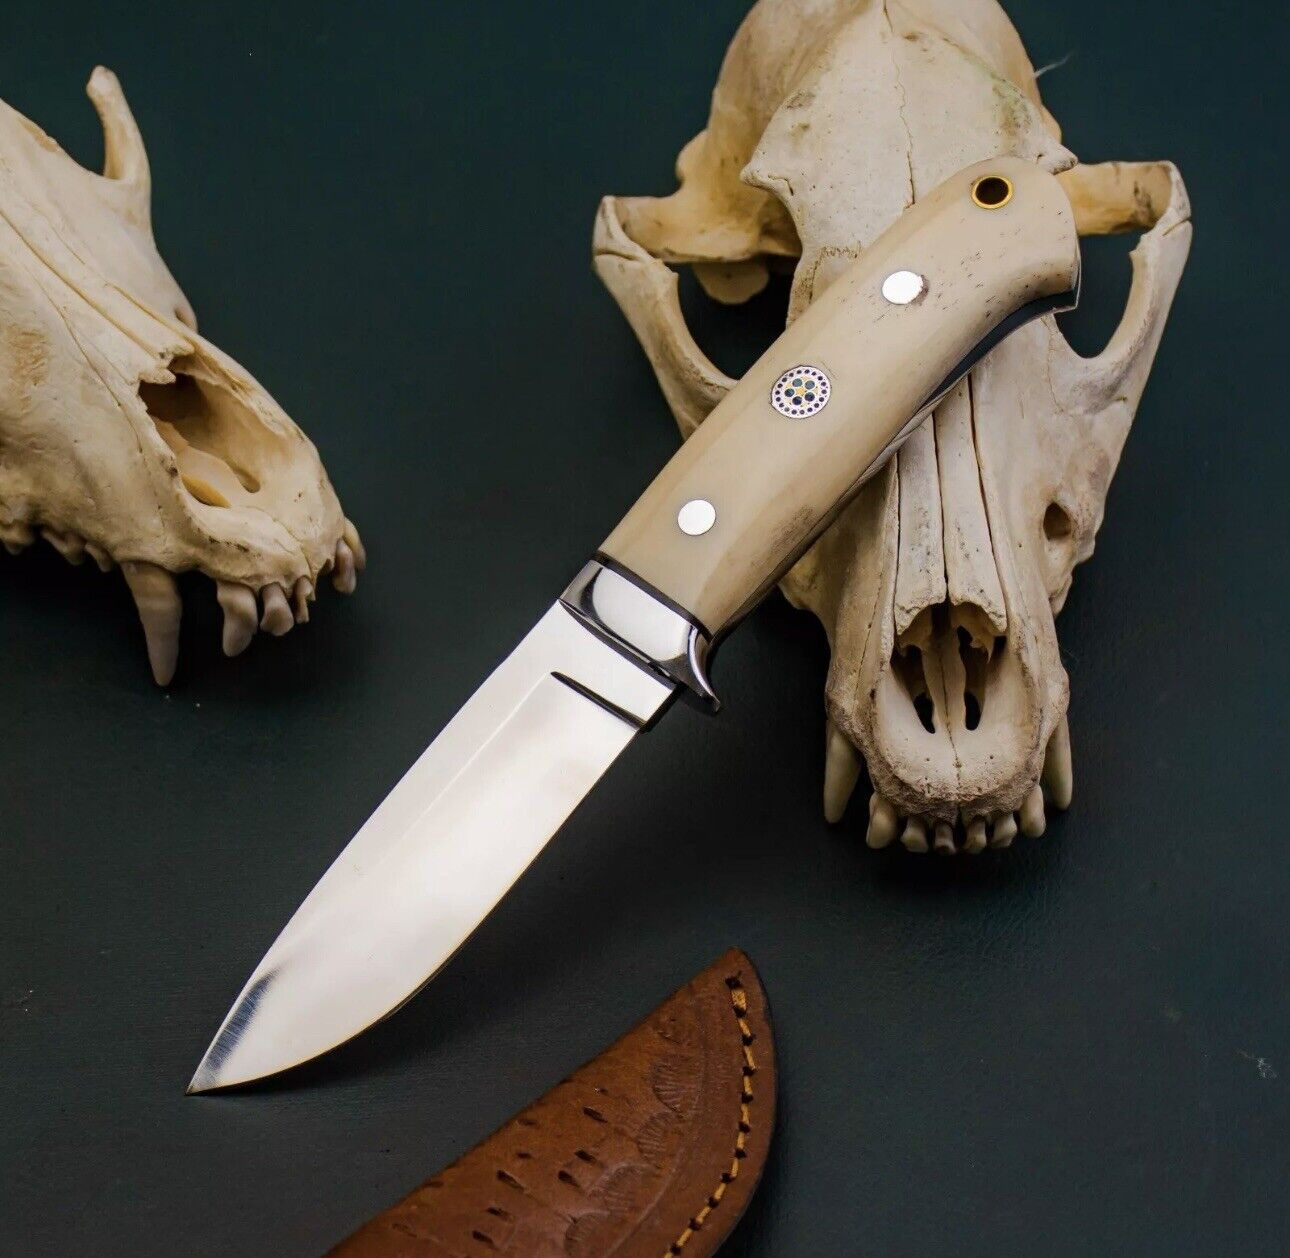 AB CUTLERY CUSTOM HANDMADE STEEL D2 SKINNER KNIFE HANDLE BY STEEL CLIP AND BONE